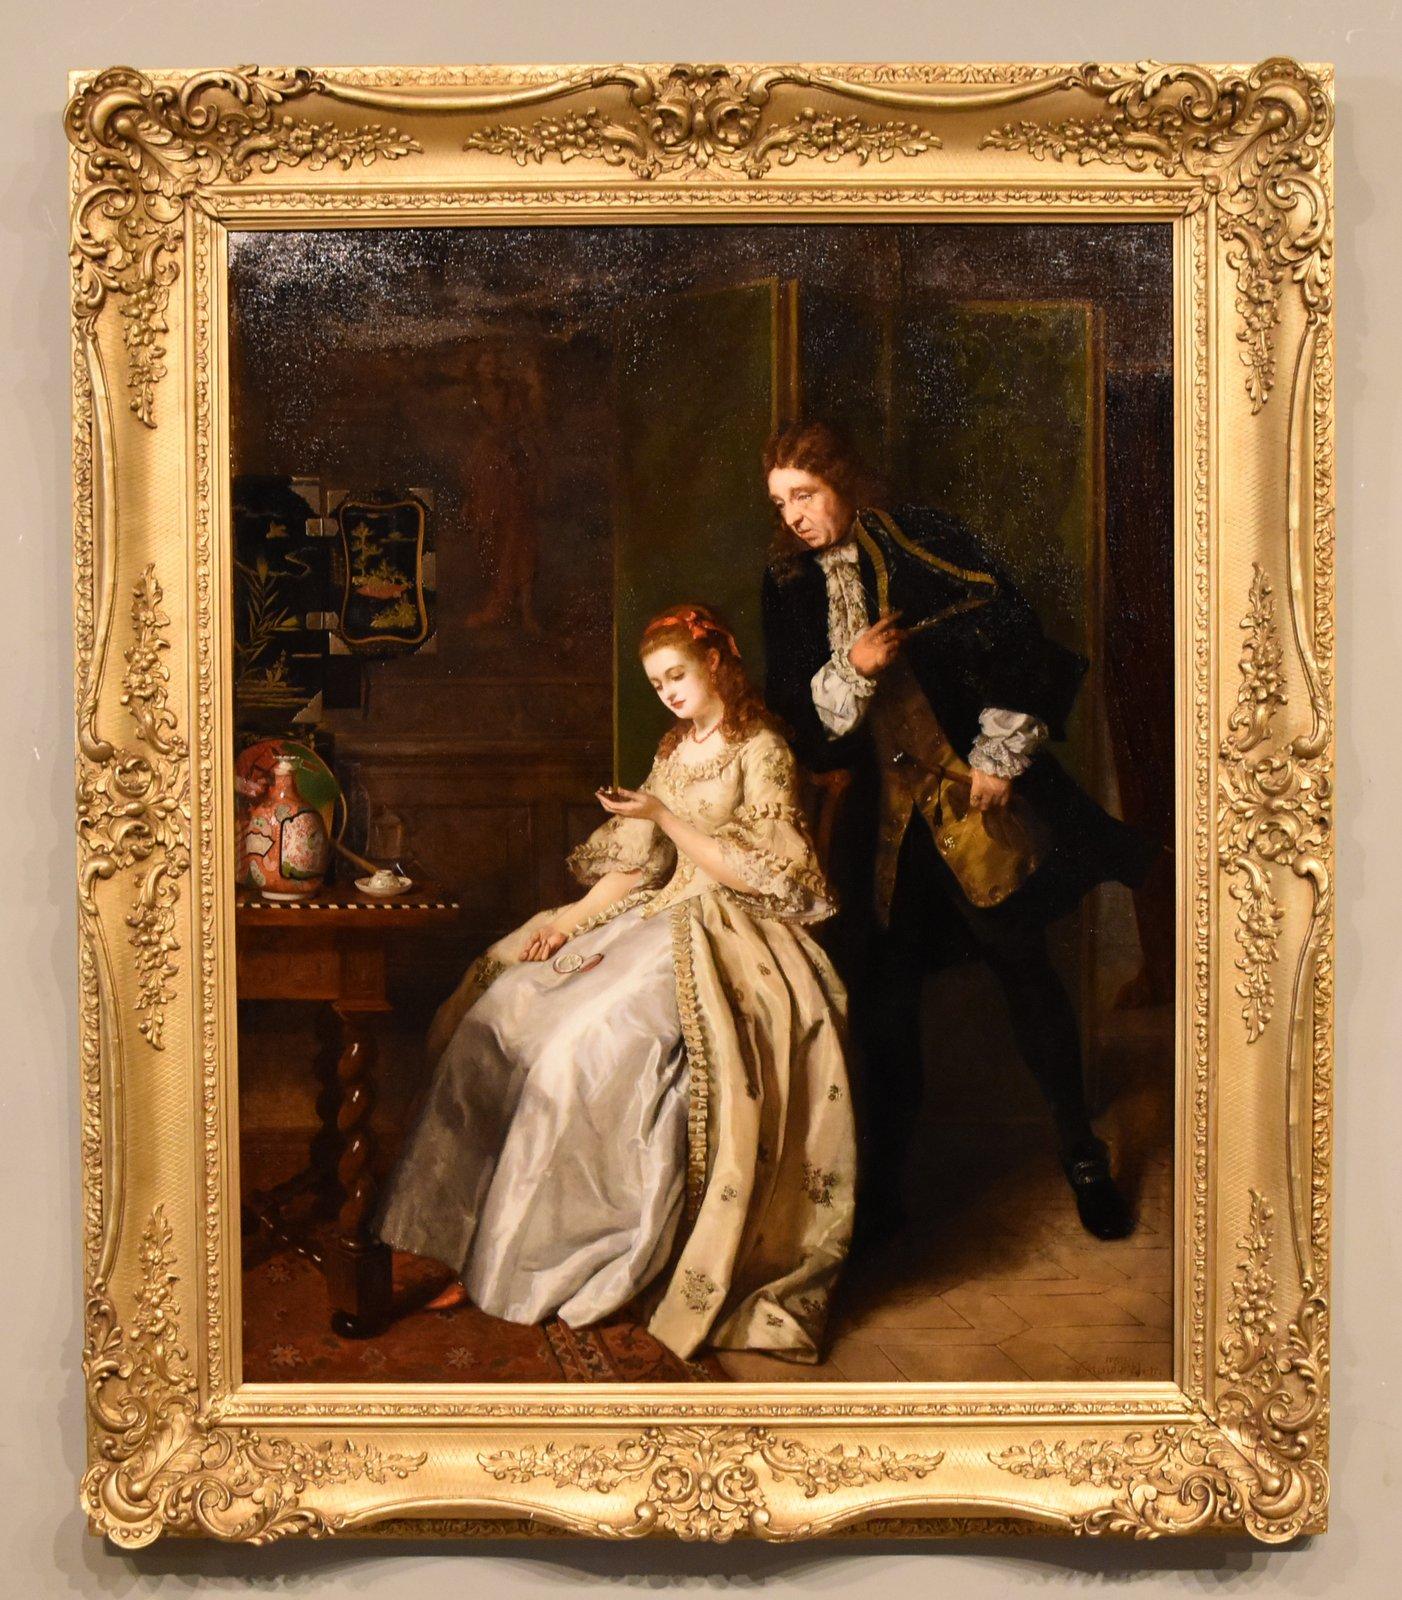 WILLIAM MAW EGLEY Interior Painting - Oil Painting by William Maw Egley "The Coming of Age" 